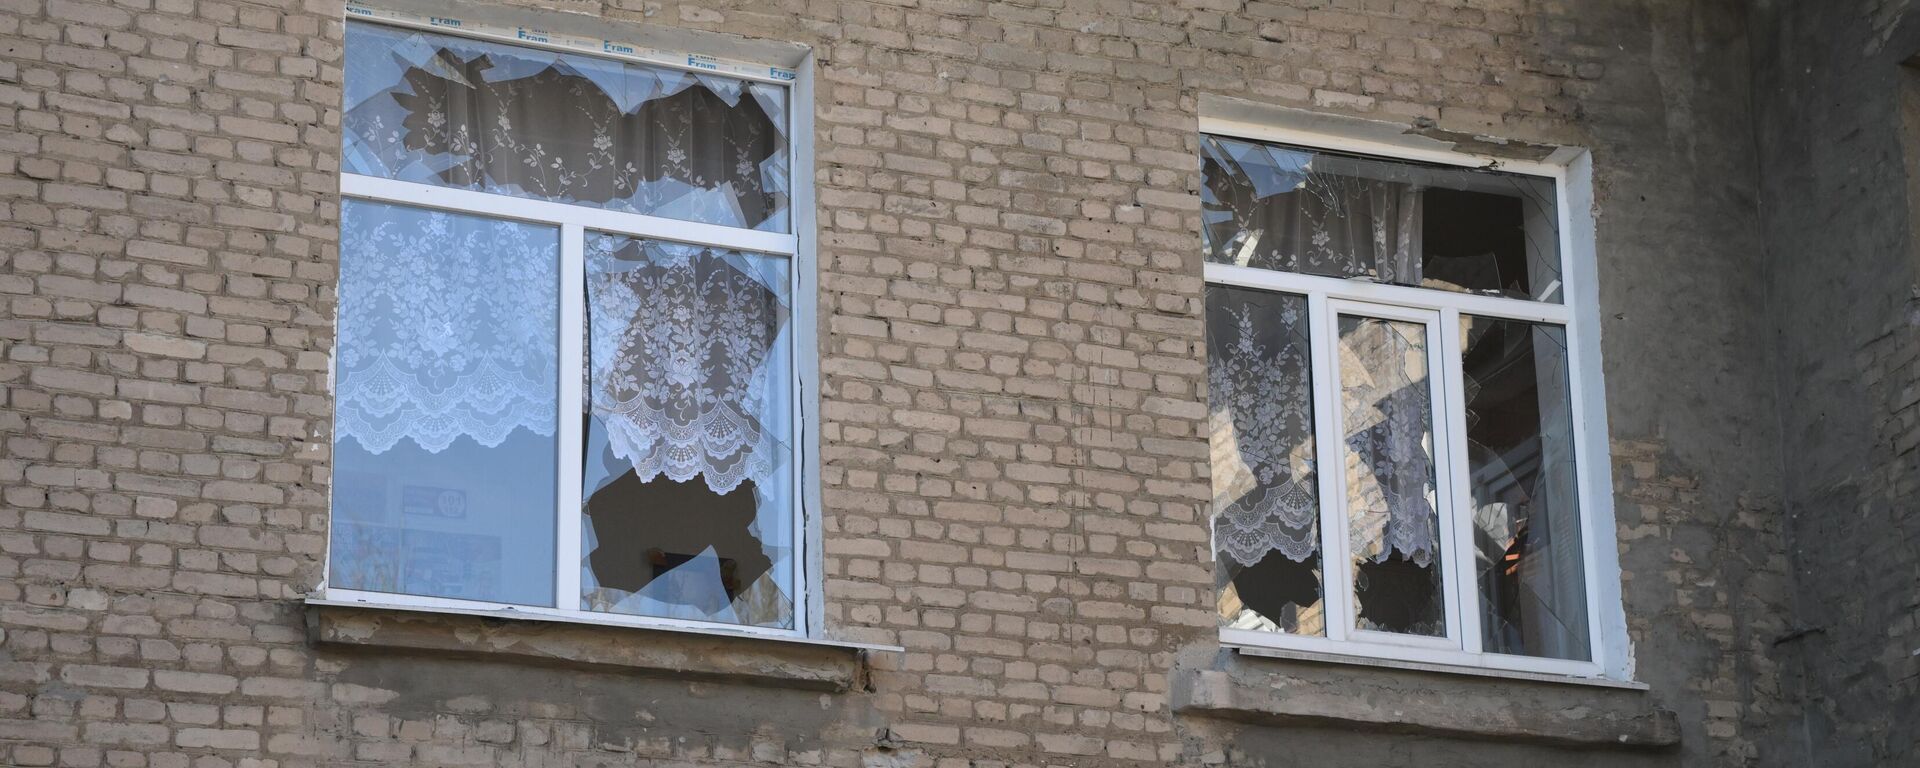 Поврежденные в результате обстрела окна в школе номер 56 в Донецке, 21 февраля 2022 - Sputnik Латвия, 1920, 21.02.2022